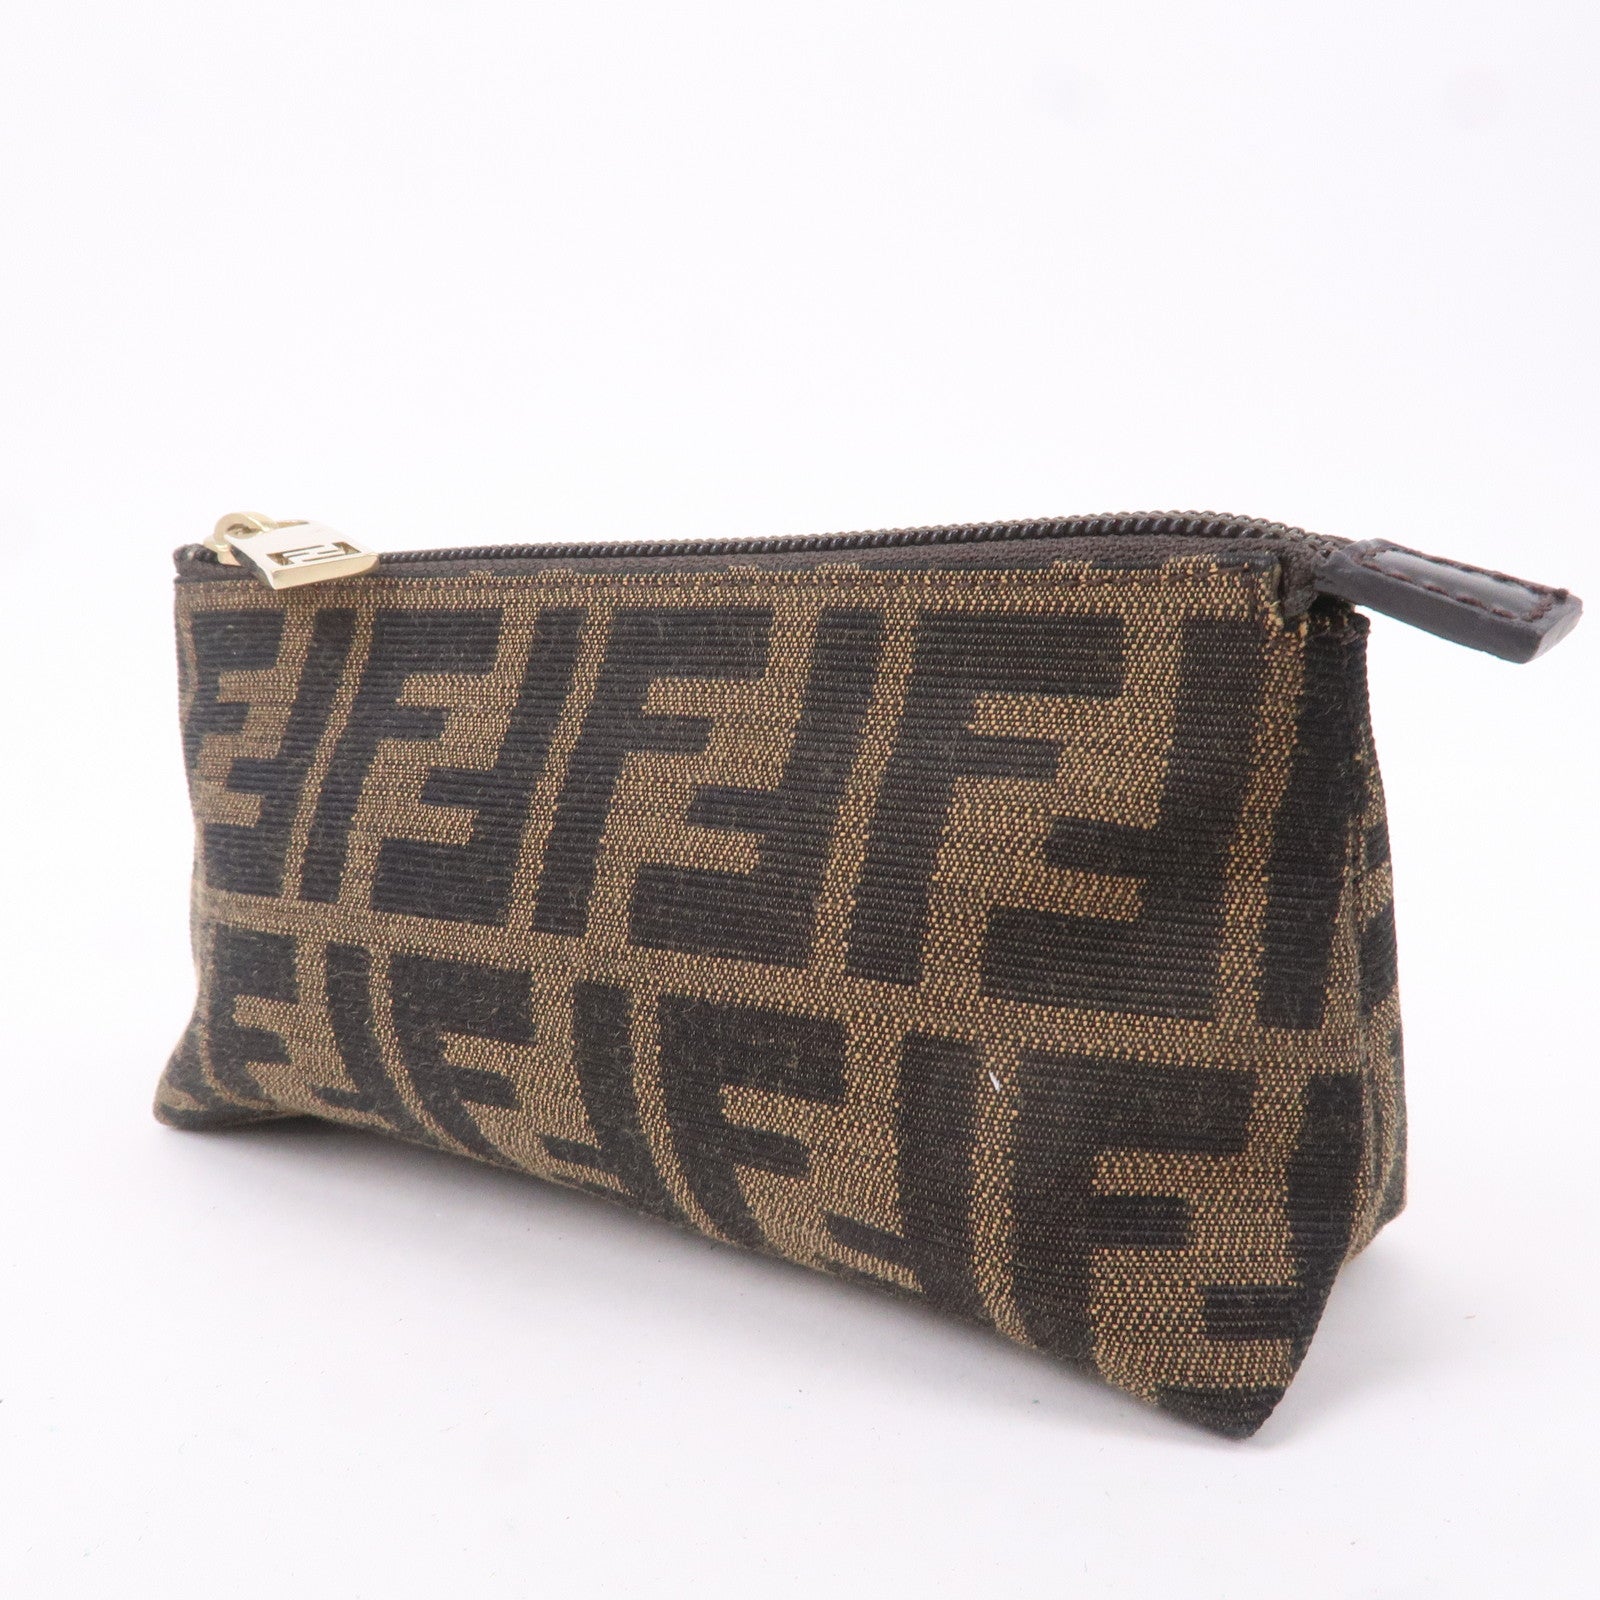 Vintage FENDI Black Shoulder Bag Handbag Purse PVC Leather Gold Tone Trim |  eBay